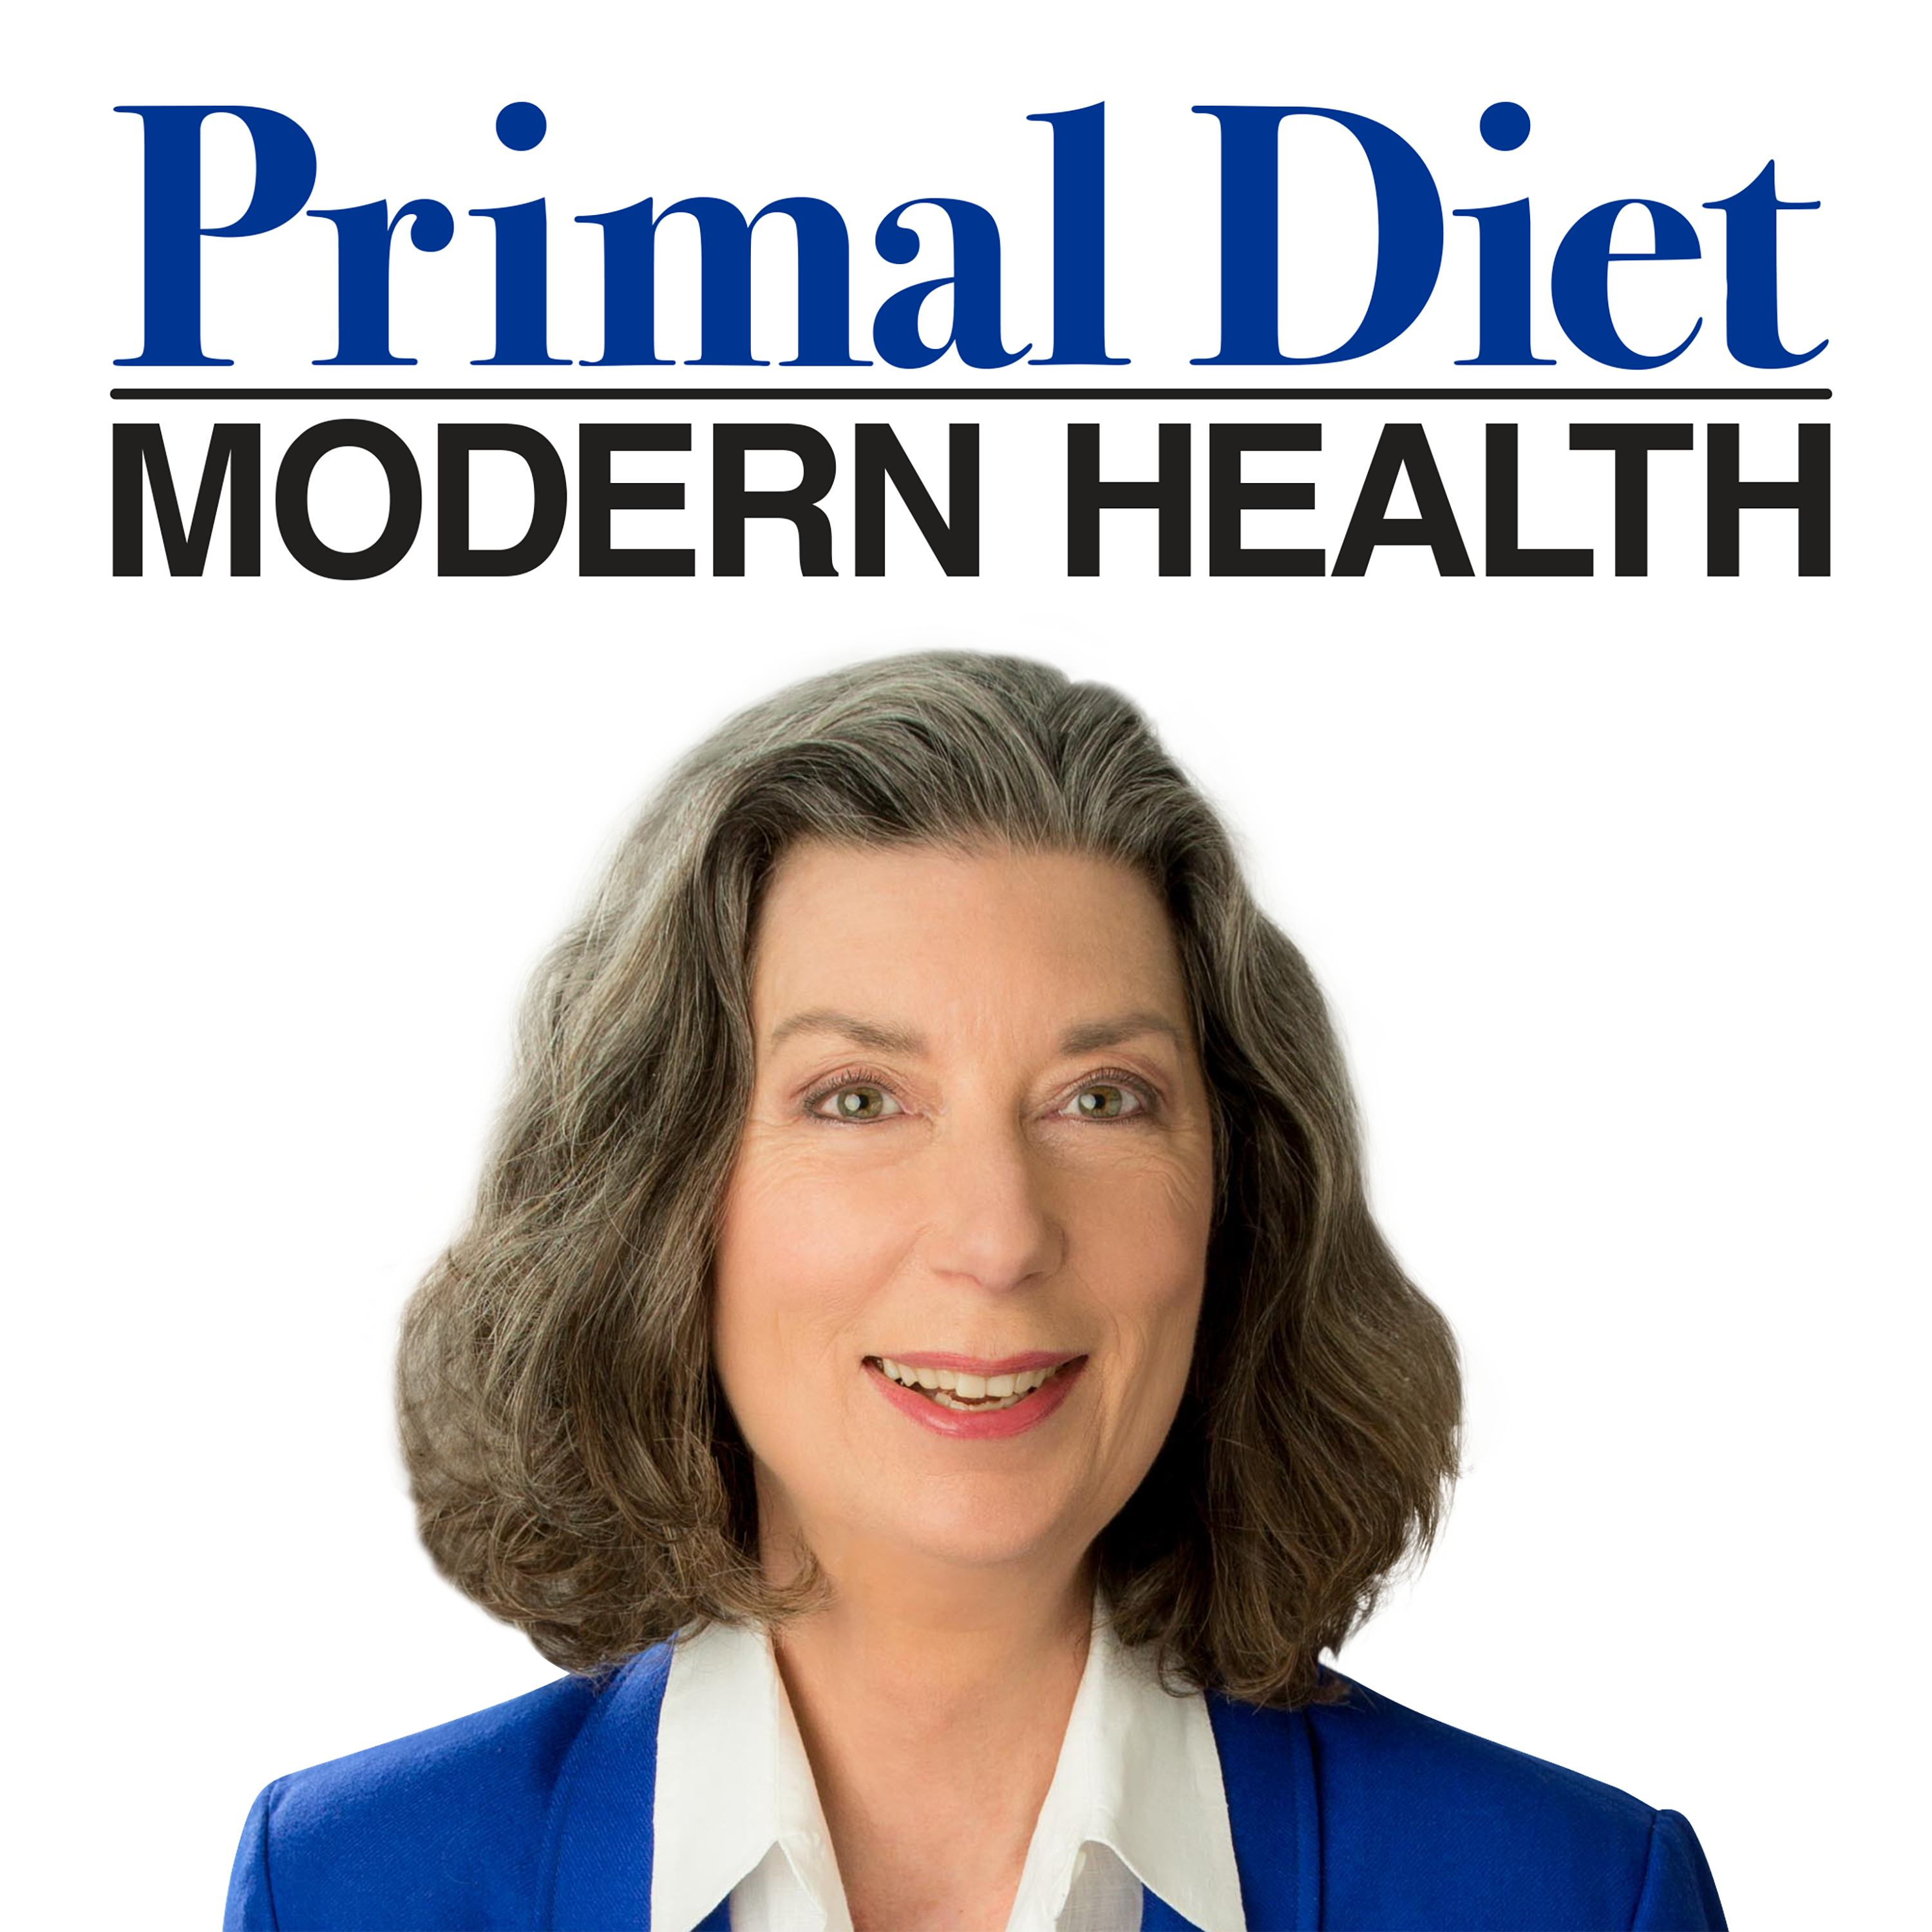 Primal Diet - Modern Health